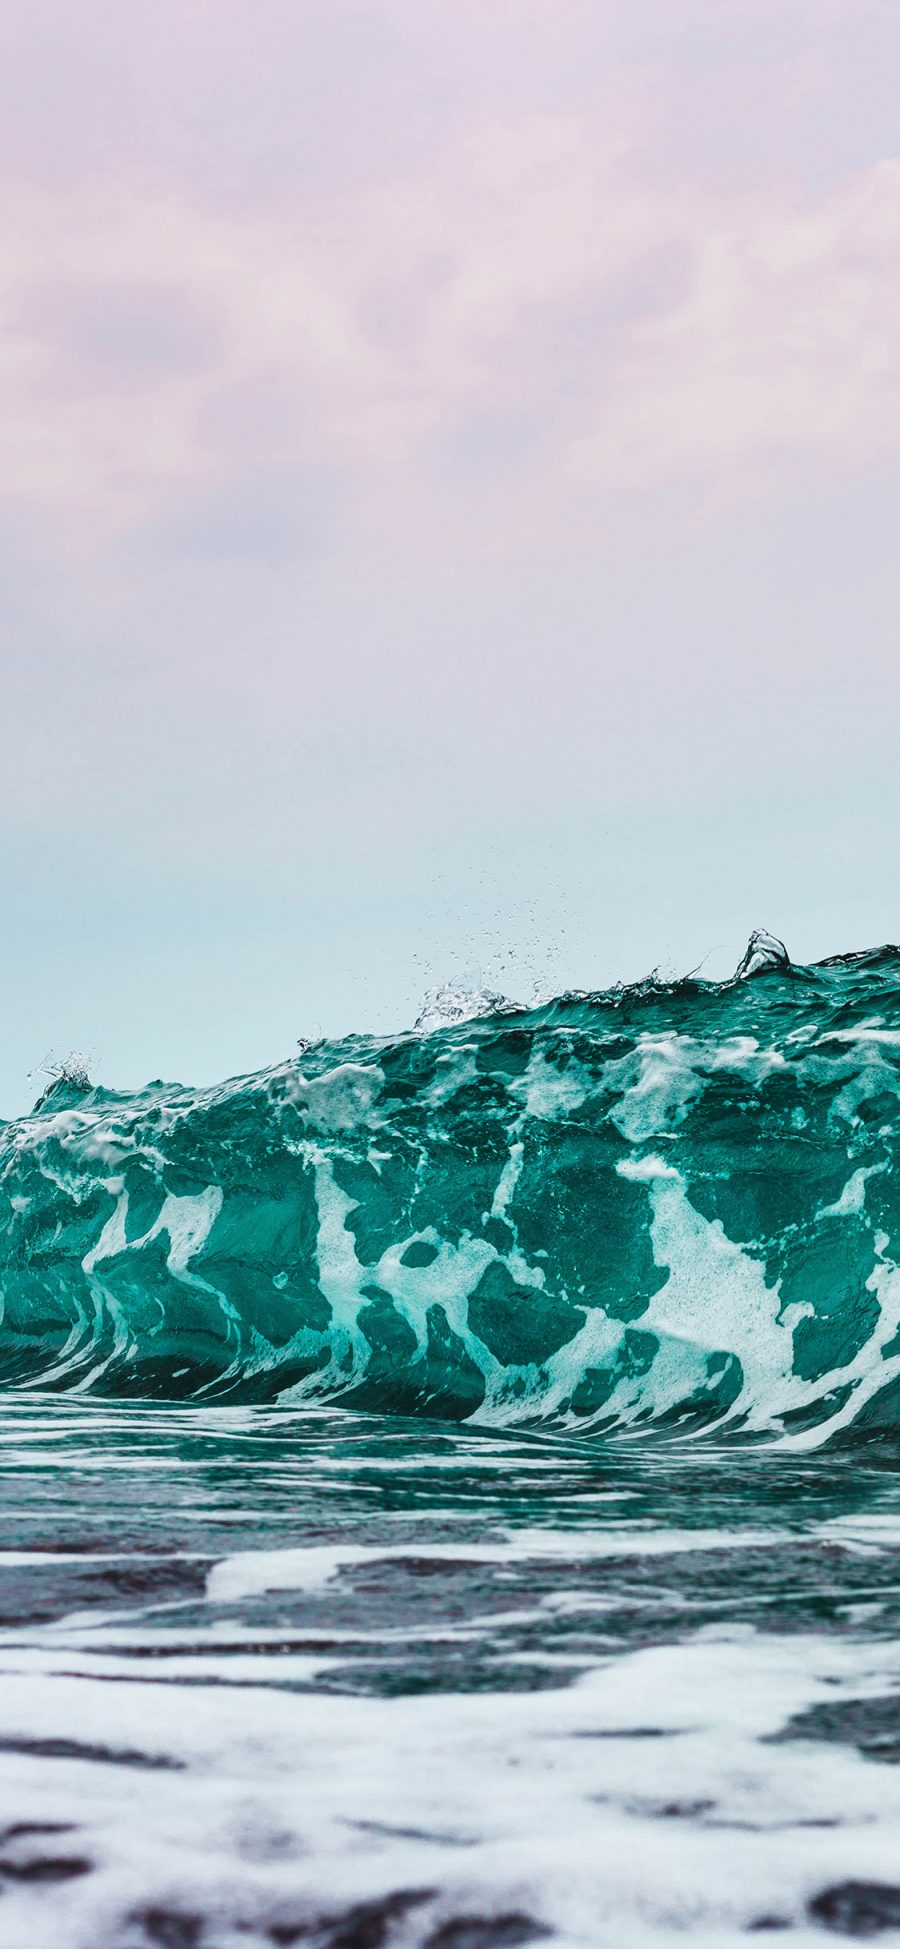 [2436×1125]大海 海浪 翻涌 湛蓝 苹果手机壁纸图片